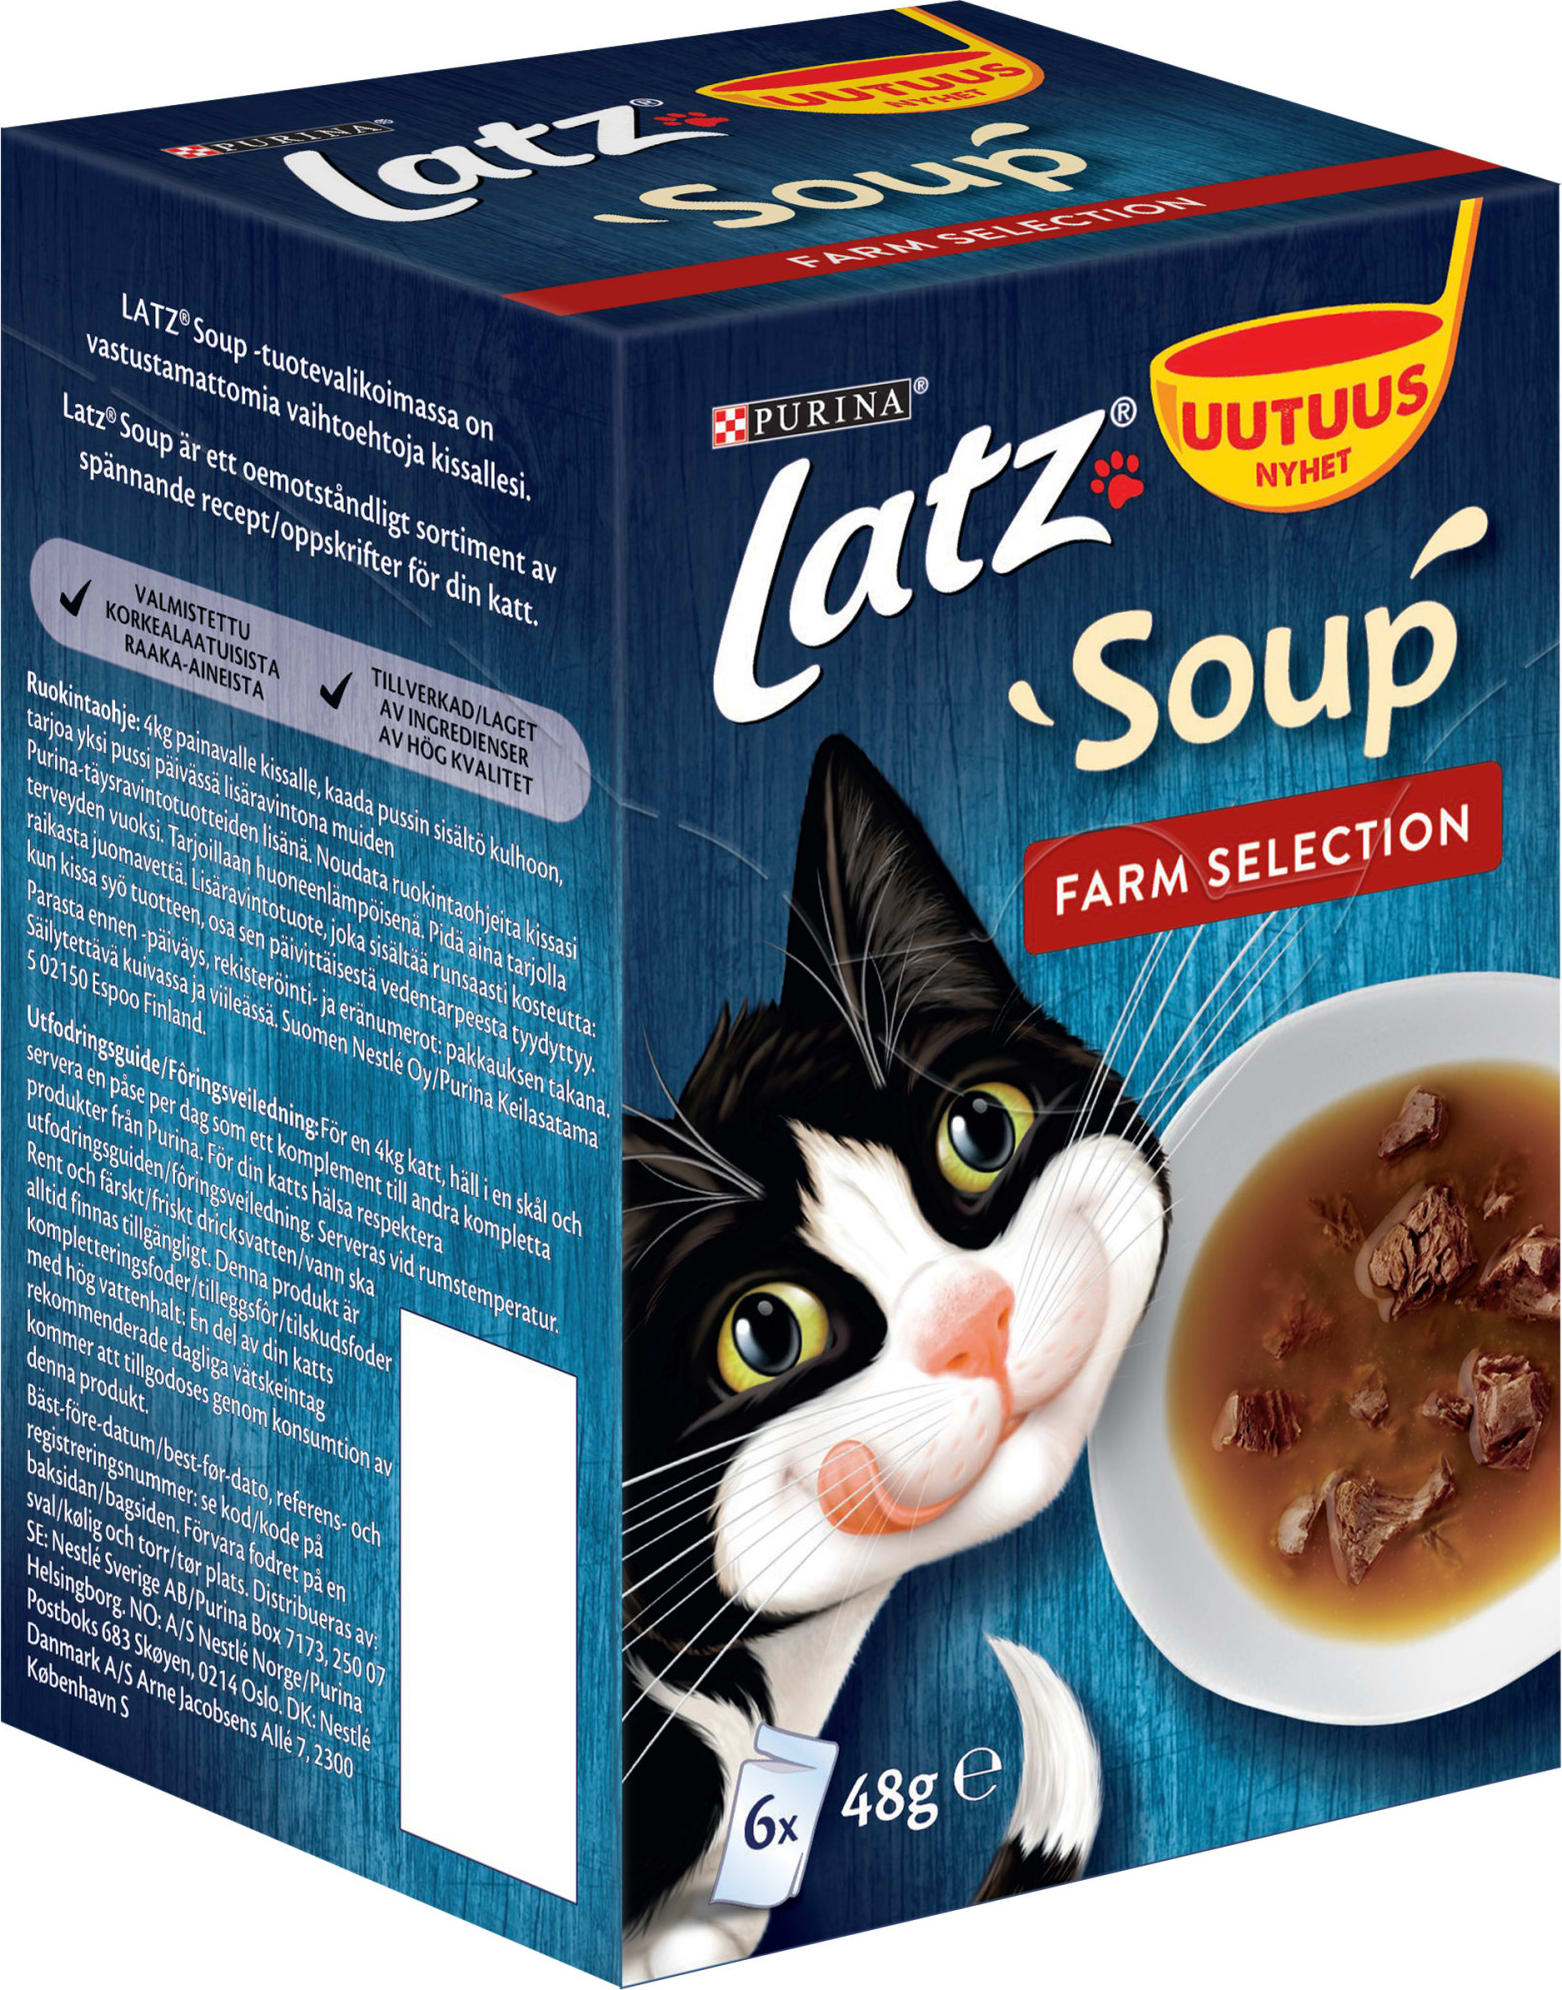 Ours their sake Latz Soup Farm Selection 6 x 48 g kissan eines | Karkkainen.com verkkokauppa